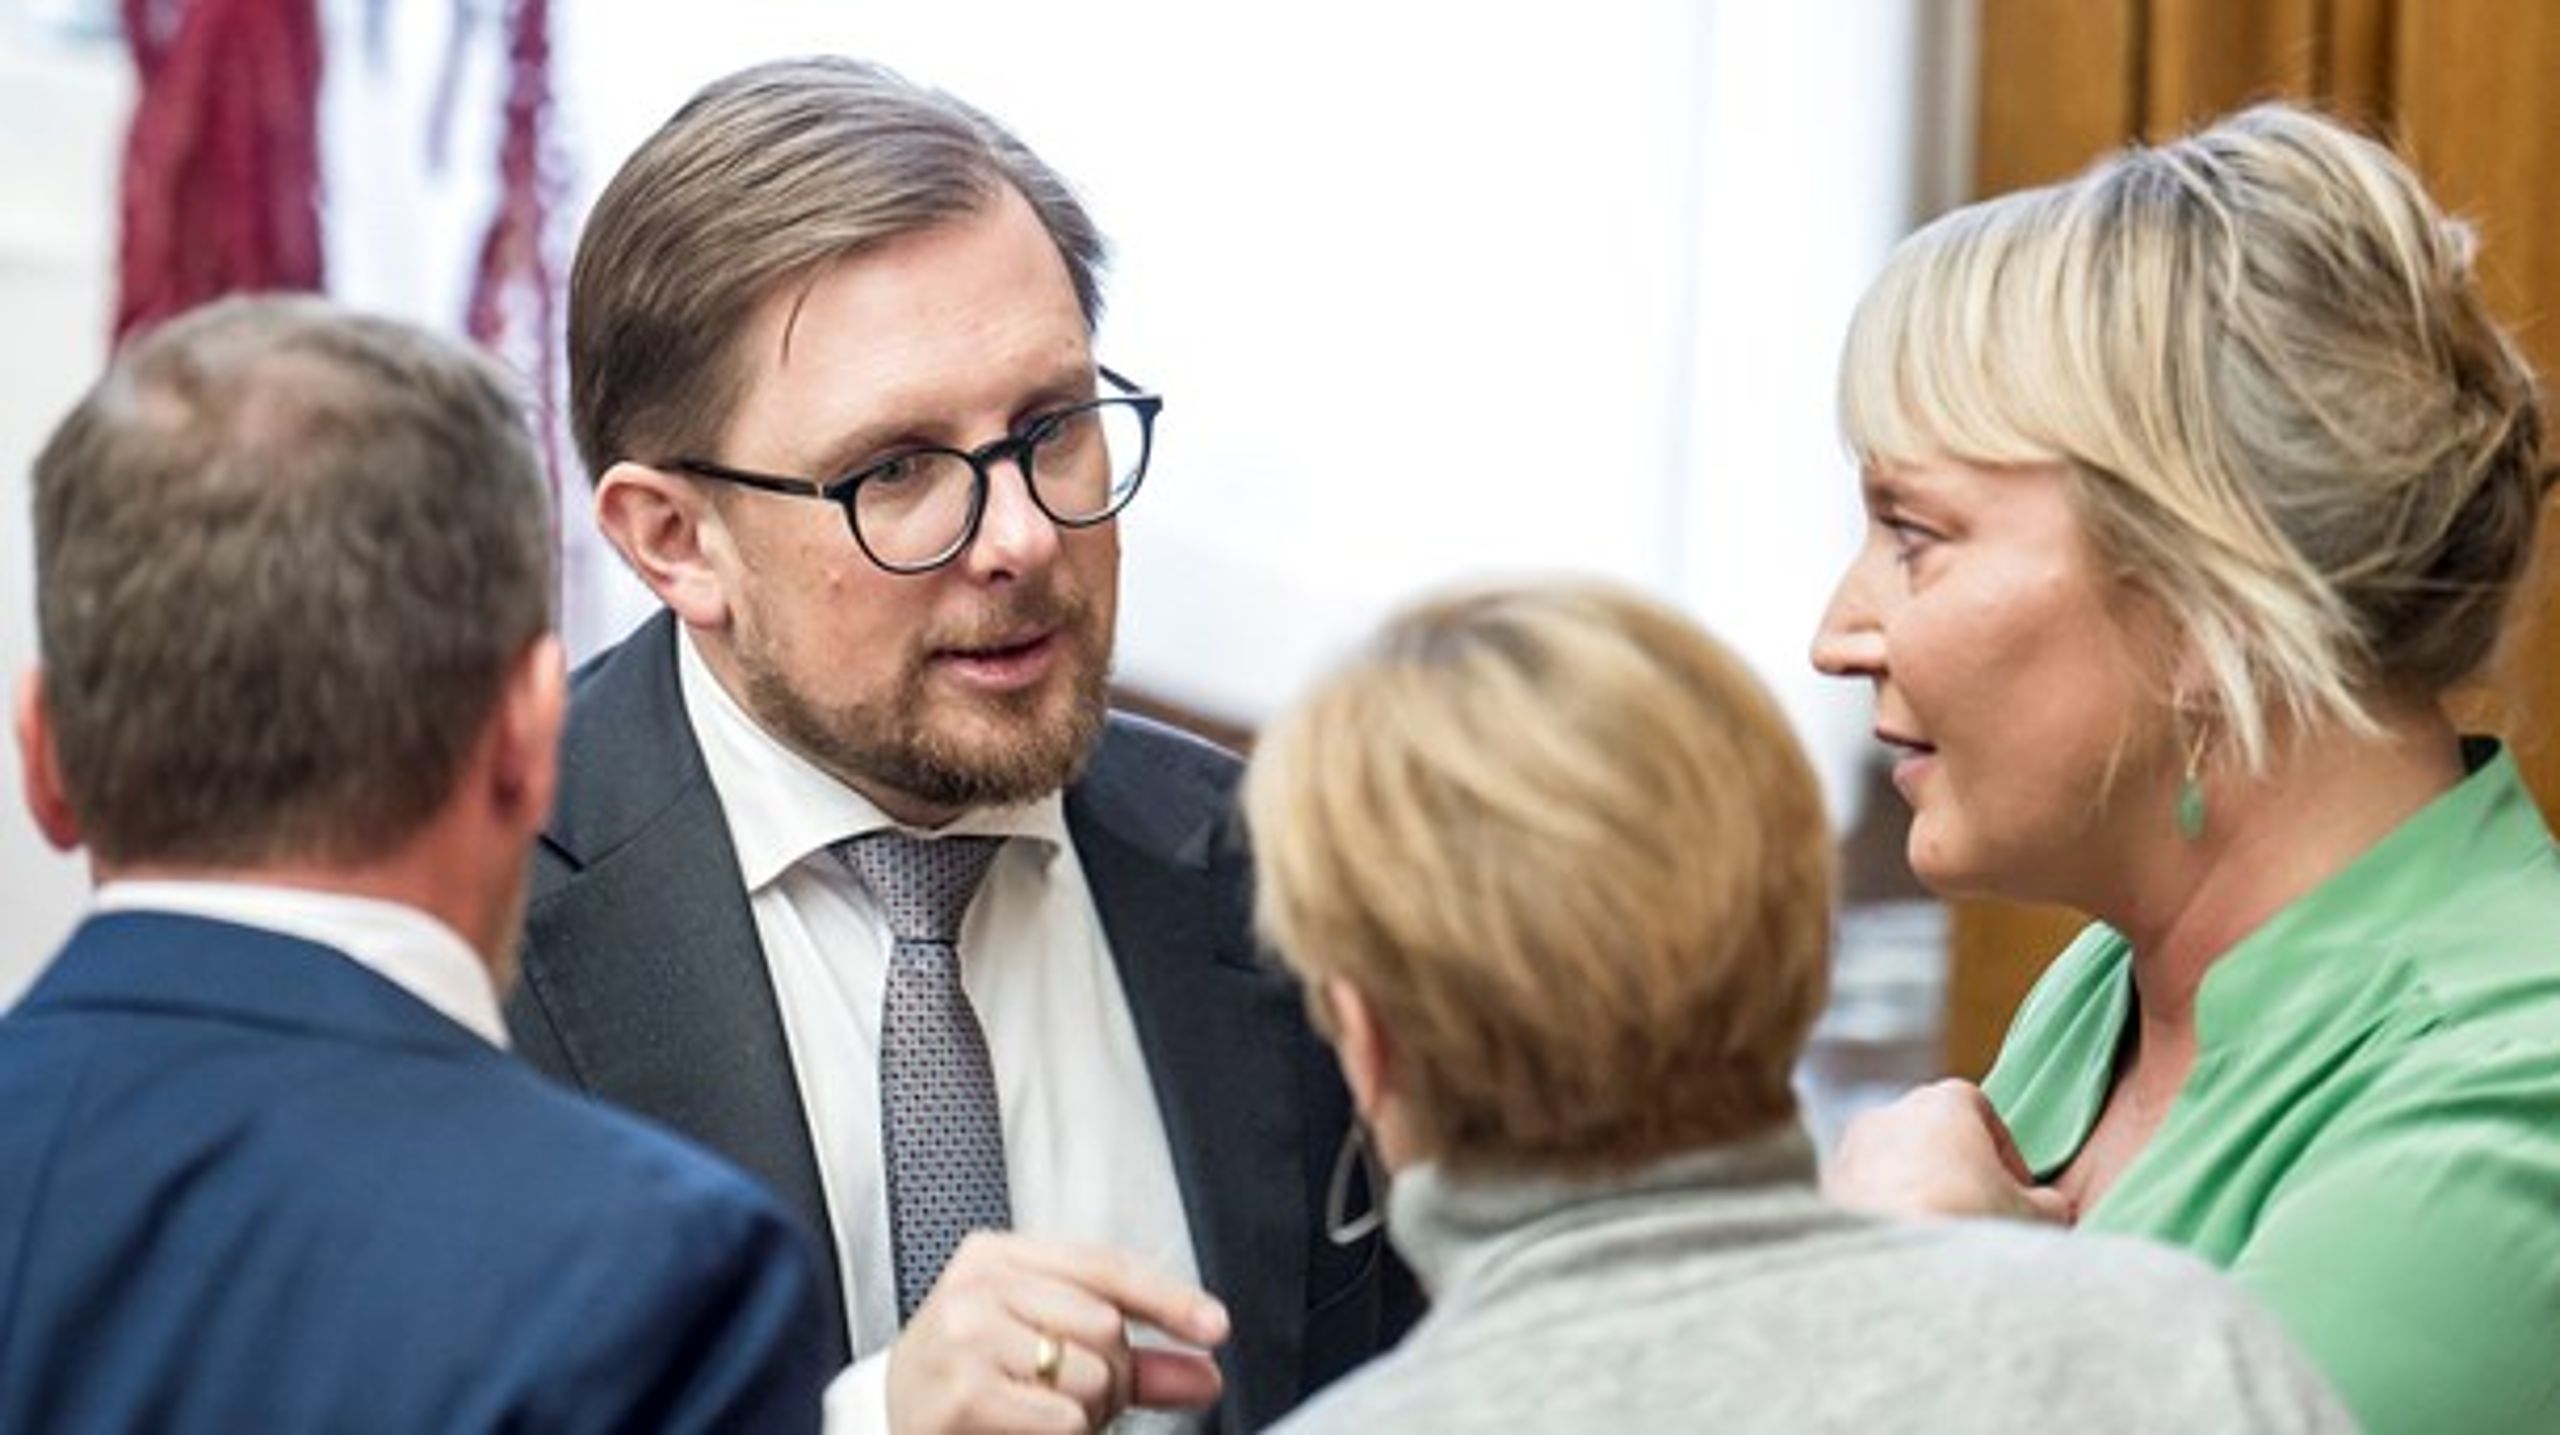 Søndag forlod Liberal Alliances forhenværende politiske ordfører Christina Egelund (th.) partiet, og nu gør tidligere minister Simon Emil Ammitzbøll-Bille det samme.